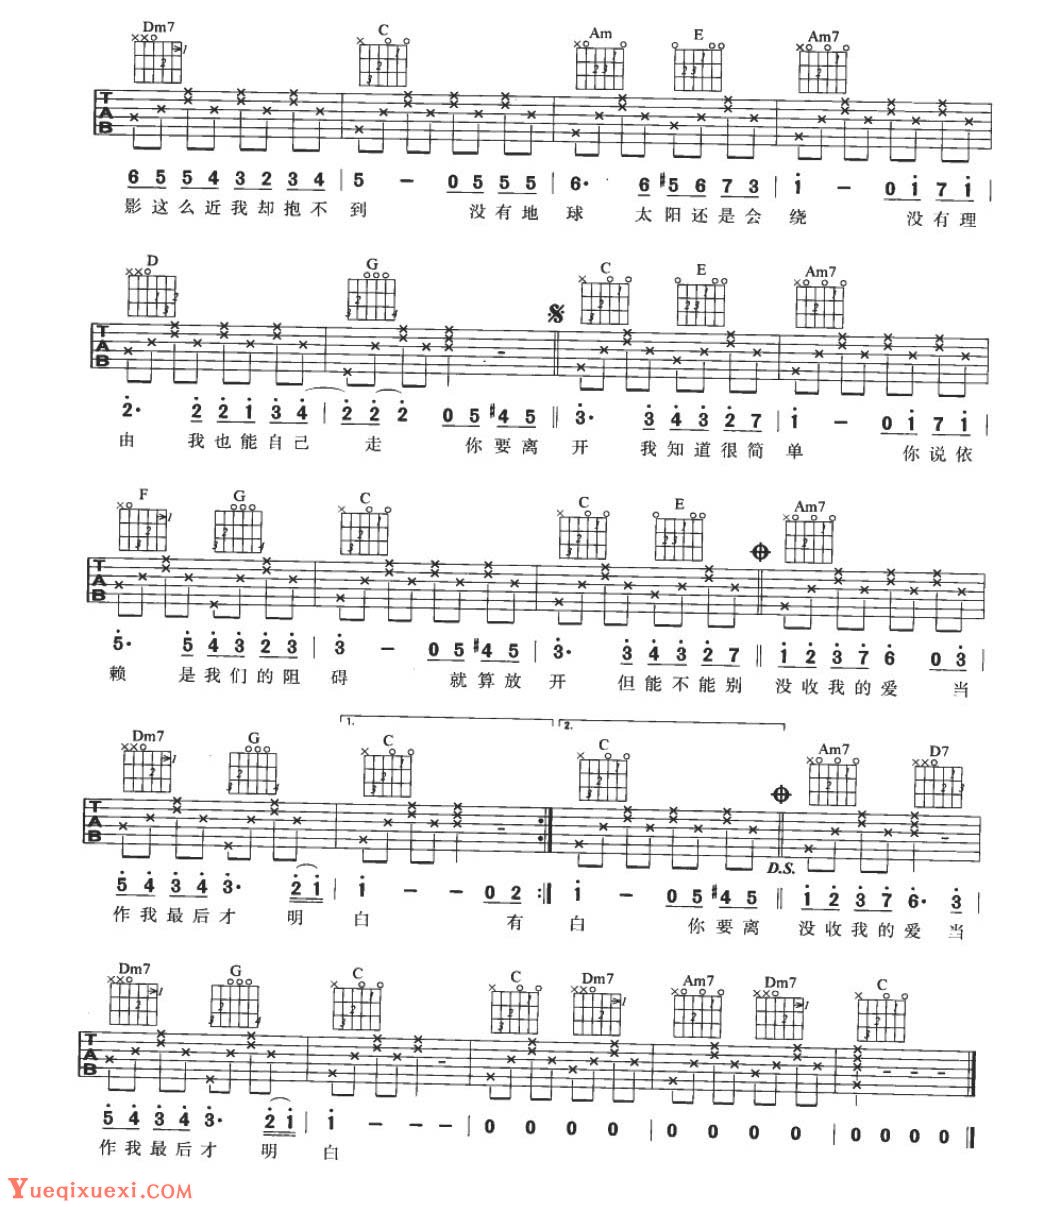 适合吉他初学者弹的歌曲《彩虹 周杰伦》C大调/四四拍/分解和弦-吉他曲谱 - 乐器学习网